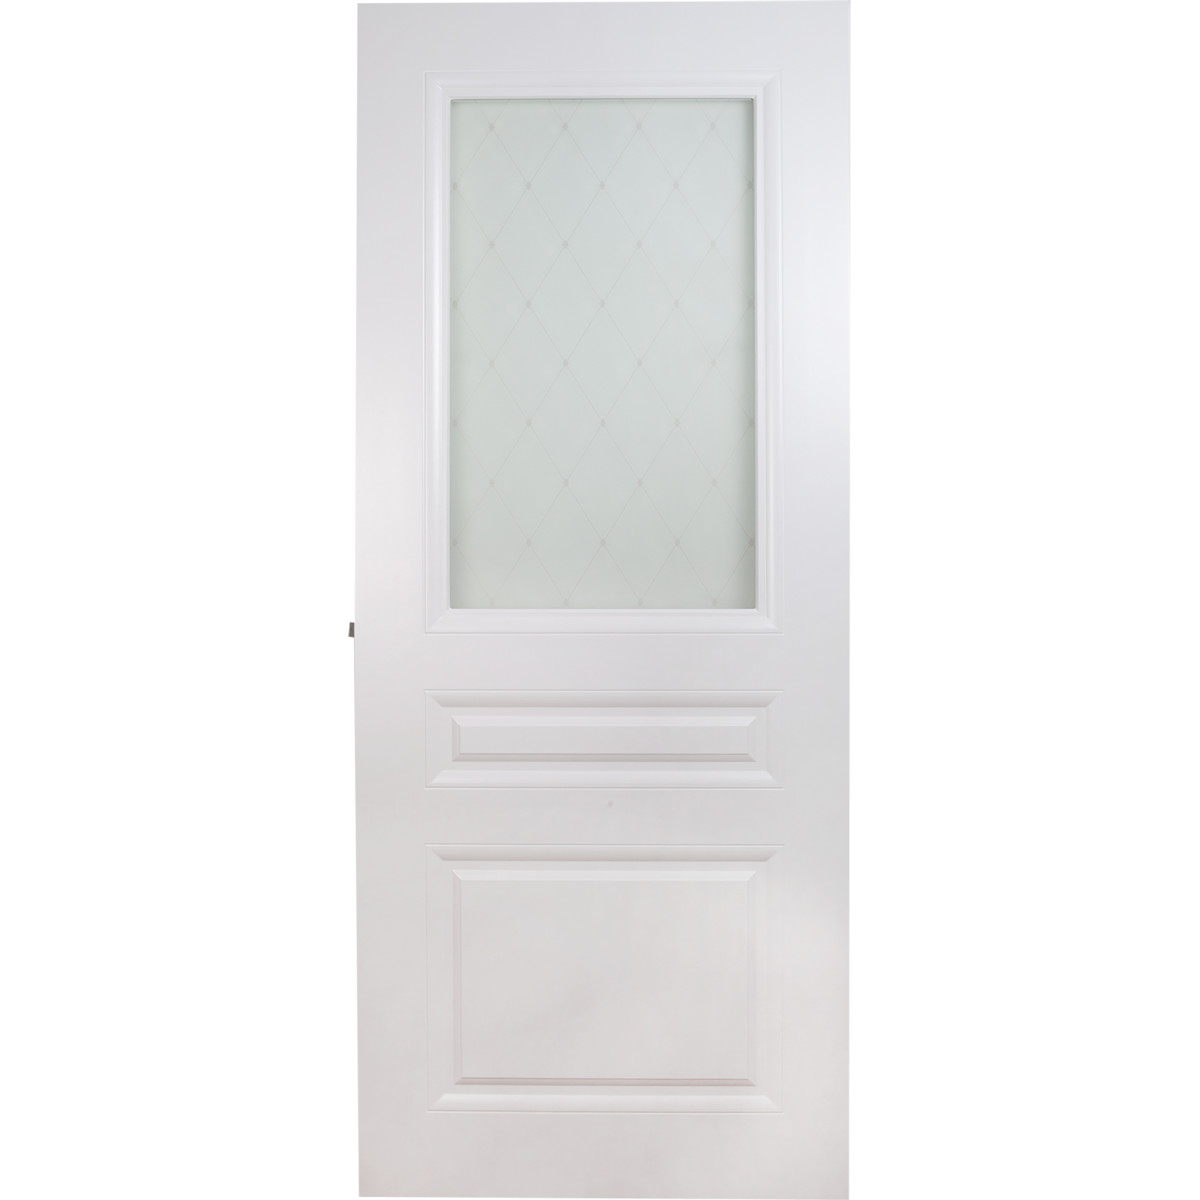 Дверь межкомнатная остеклённая Стелла, 80x200 см, эмаль, цвет белый